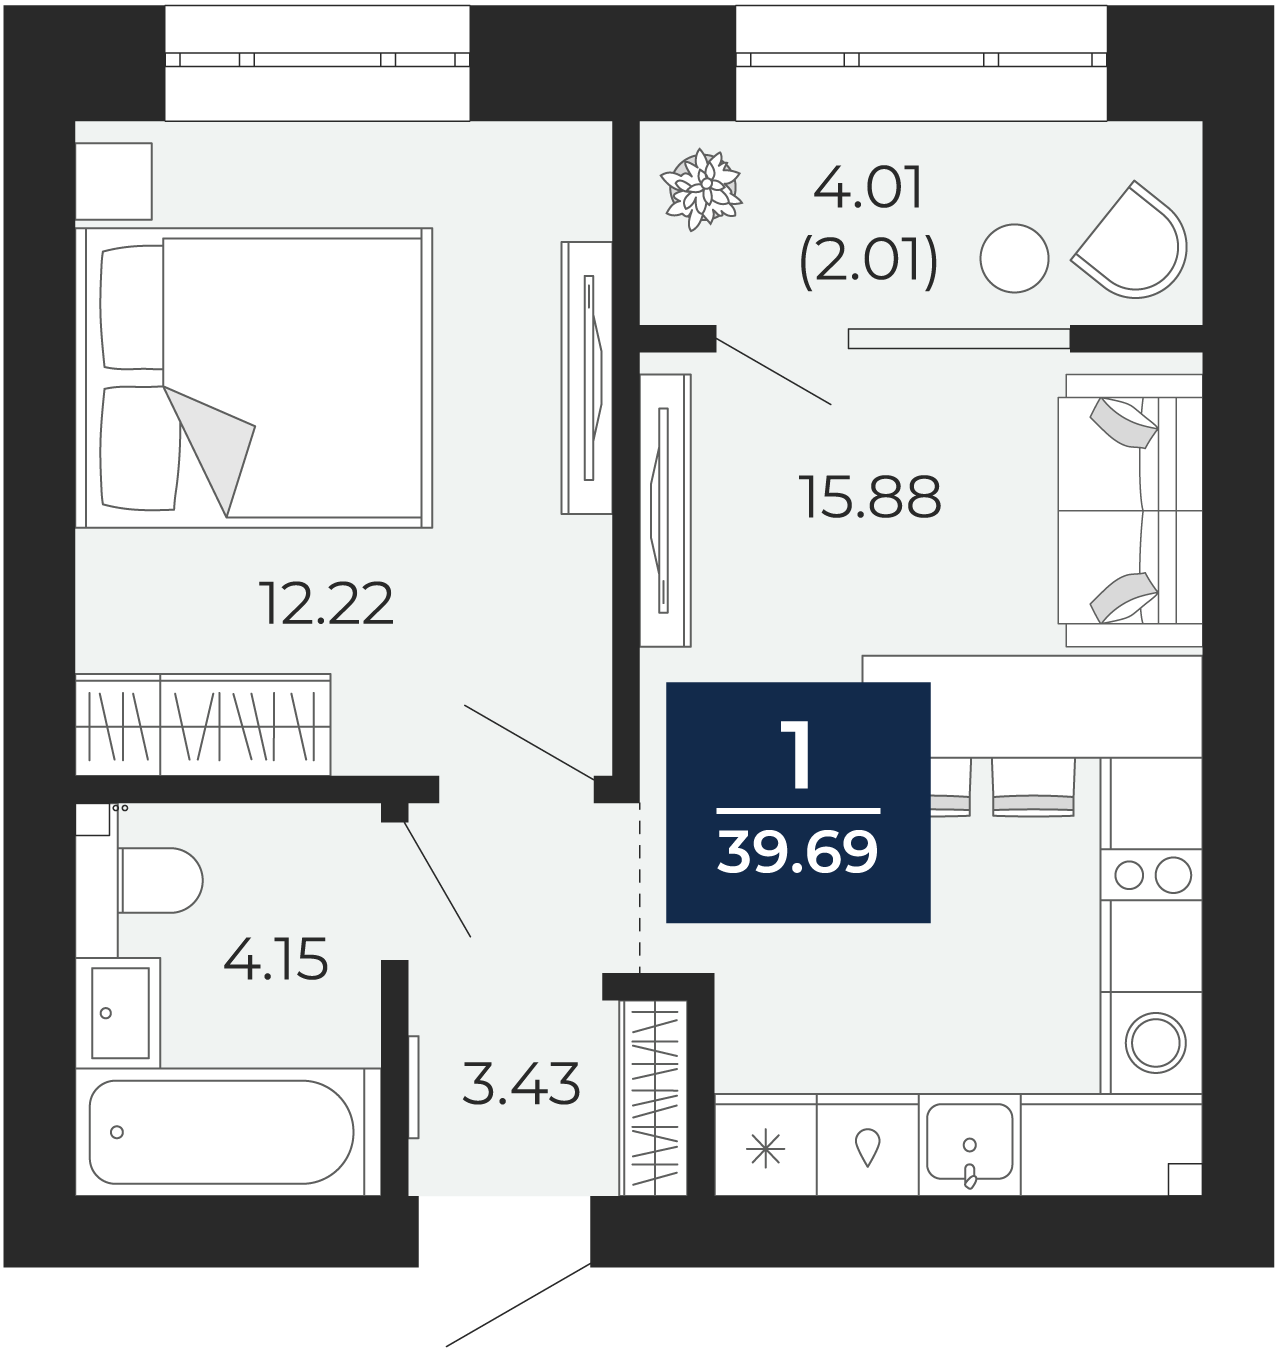 Квартира № 233, 1-комнатная, 39.69 кв. м, 7 этаж